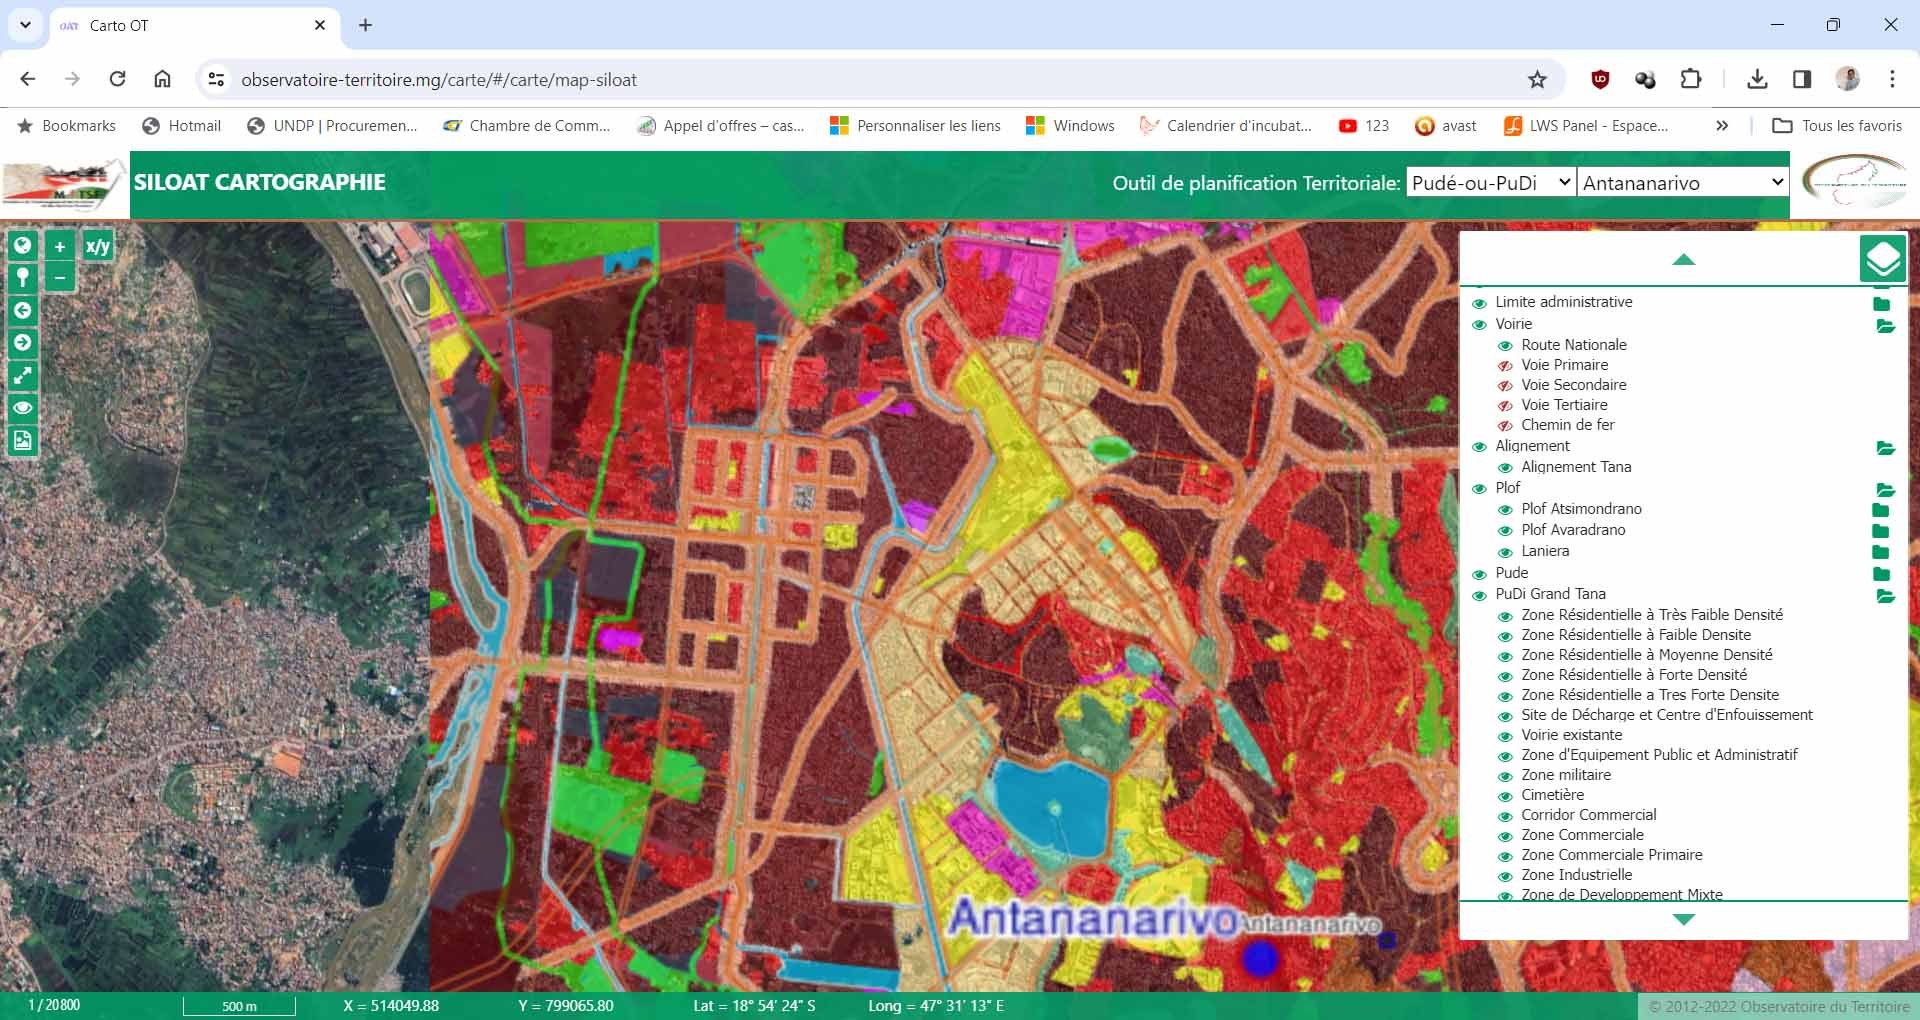 Carte d'utilisation du Sol Antananarivo, publié sur webmapping